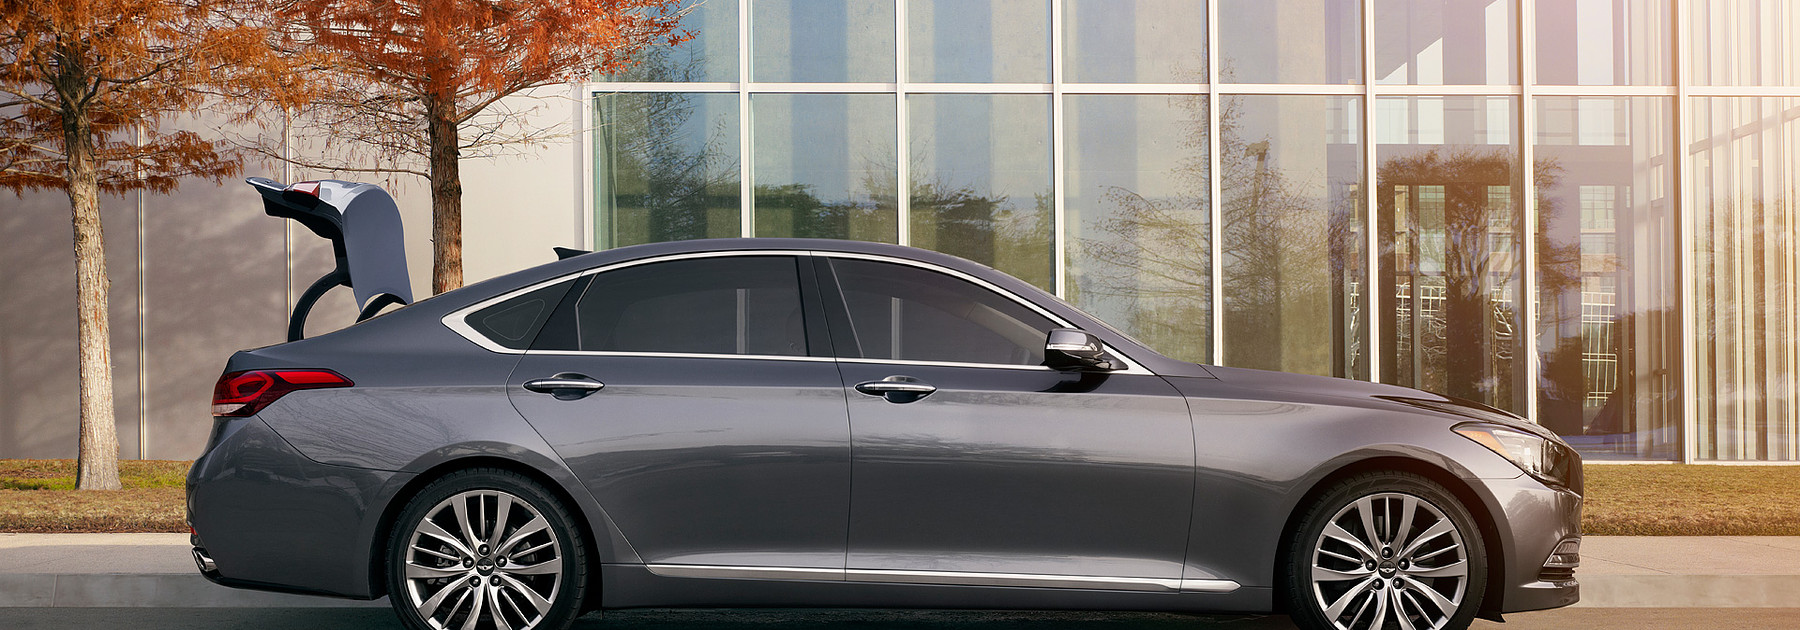 Hyundai Genesis: What makes this car a star - MarketWatch